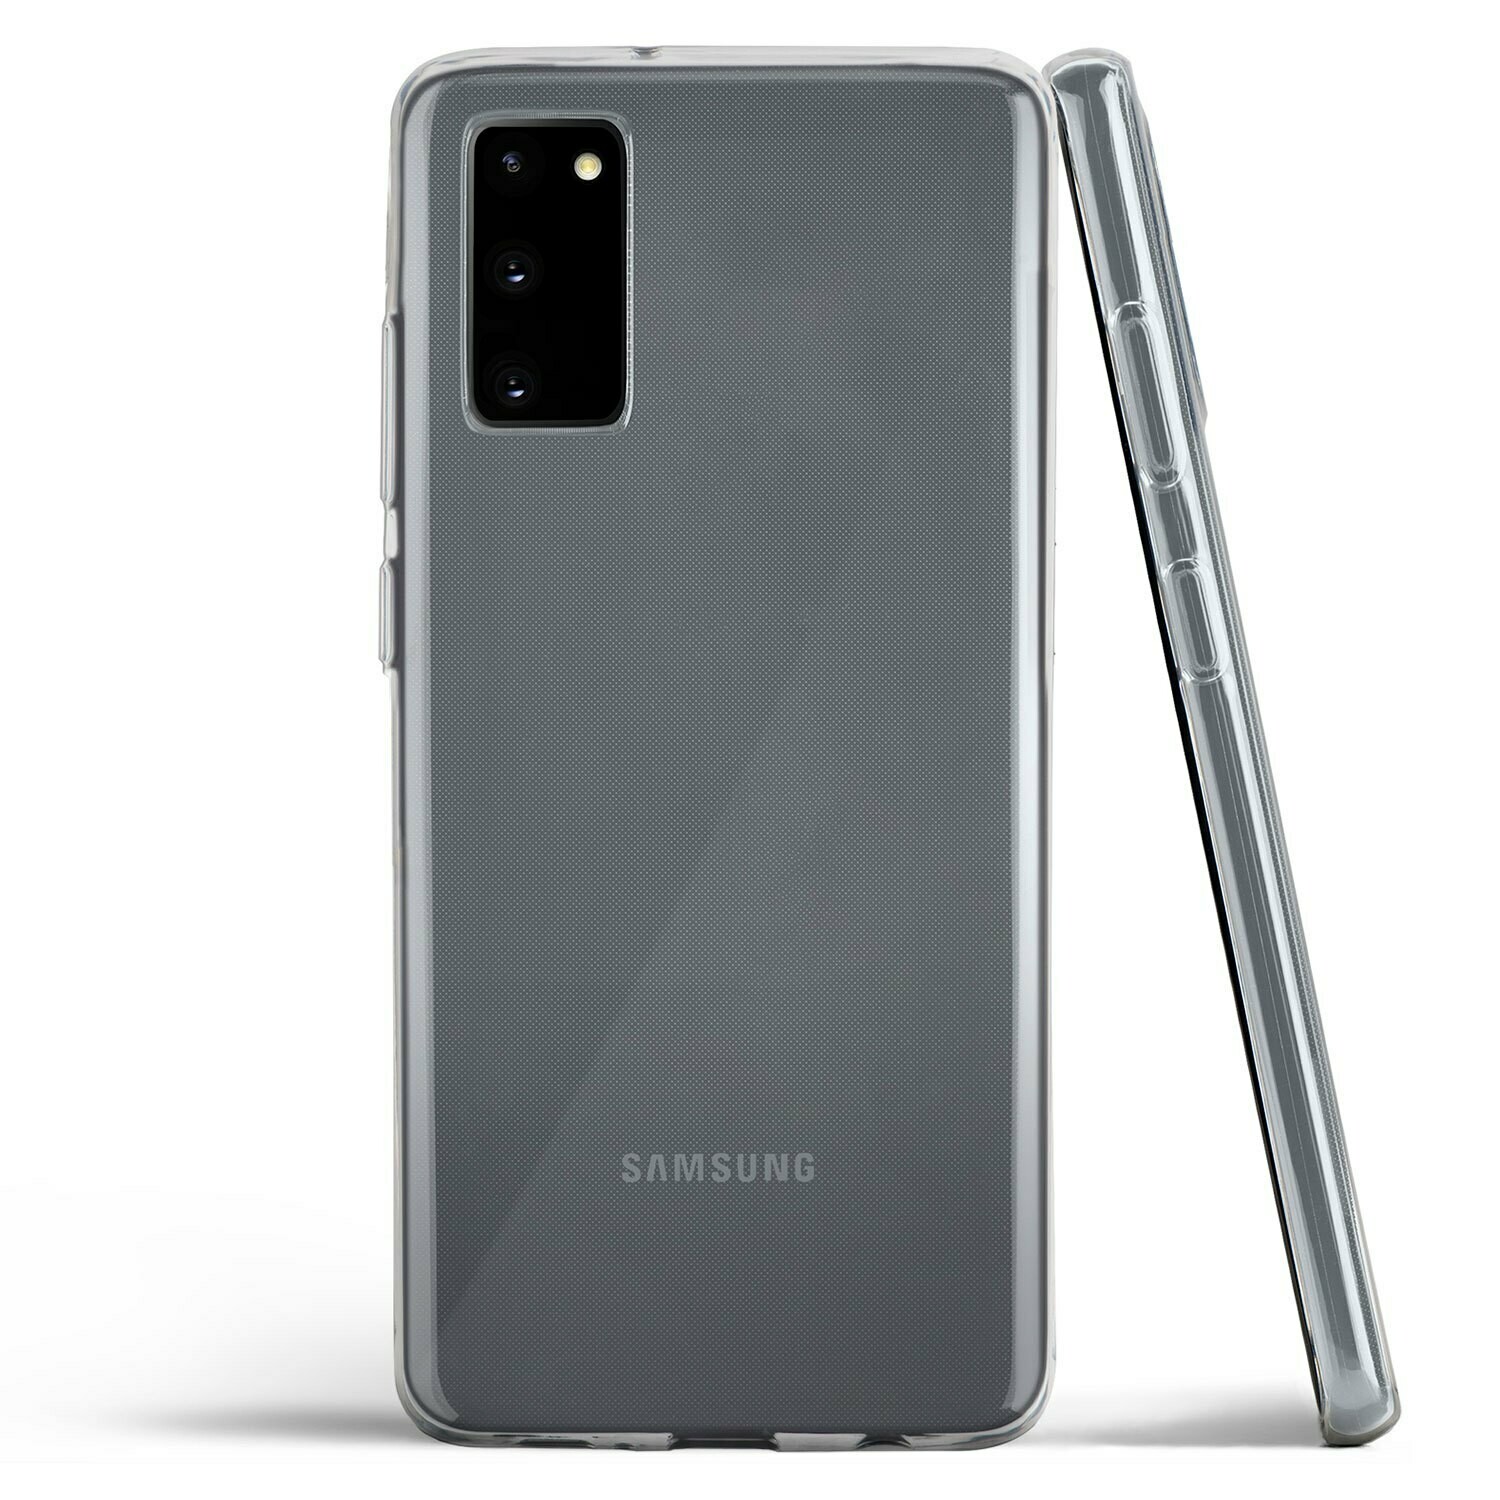 Самсунг s20 отзывы. Самсунг галакси s20. Samsung Galaxy s20 серый. Samsung Galaxy s20 Samsung. Samsung Galaxy s20 Plus.